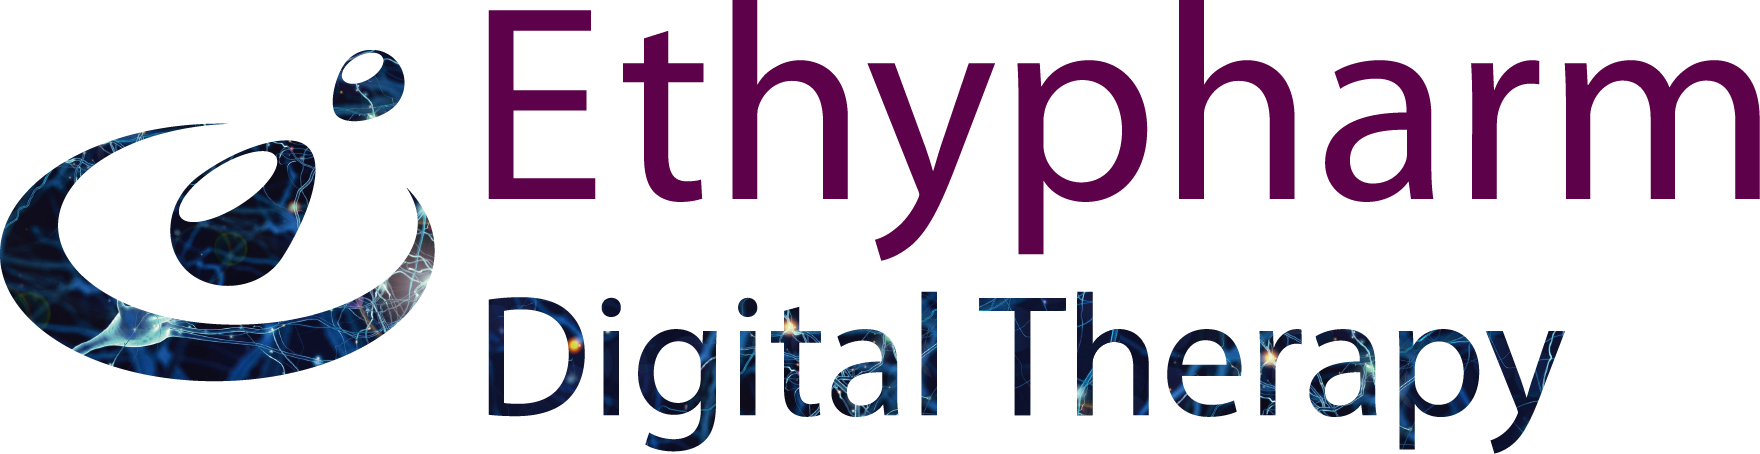 ETHYPHARM Digital Therapy